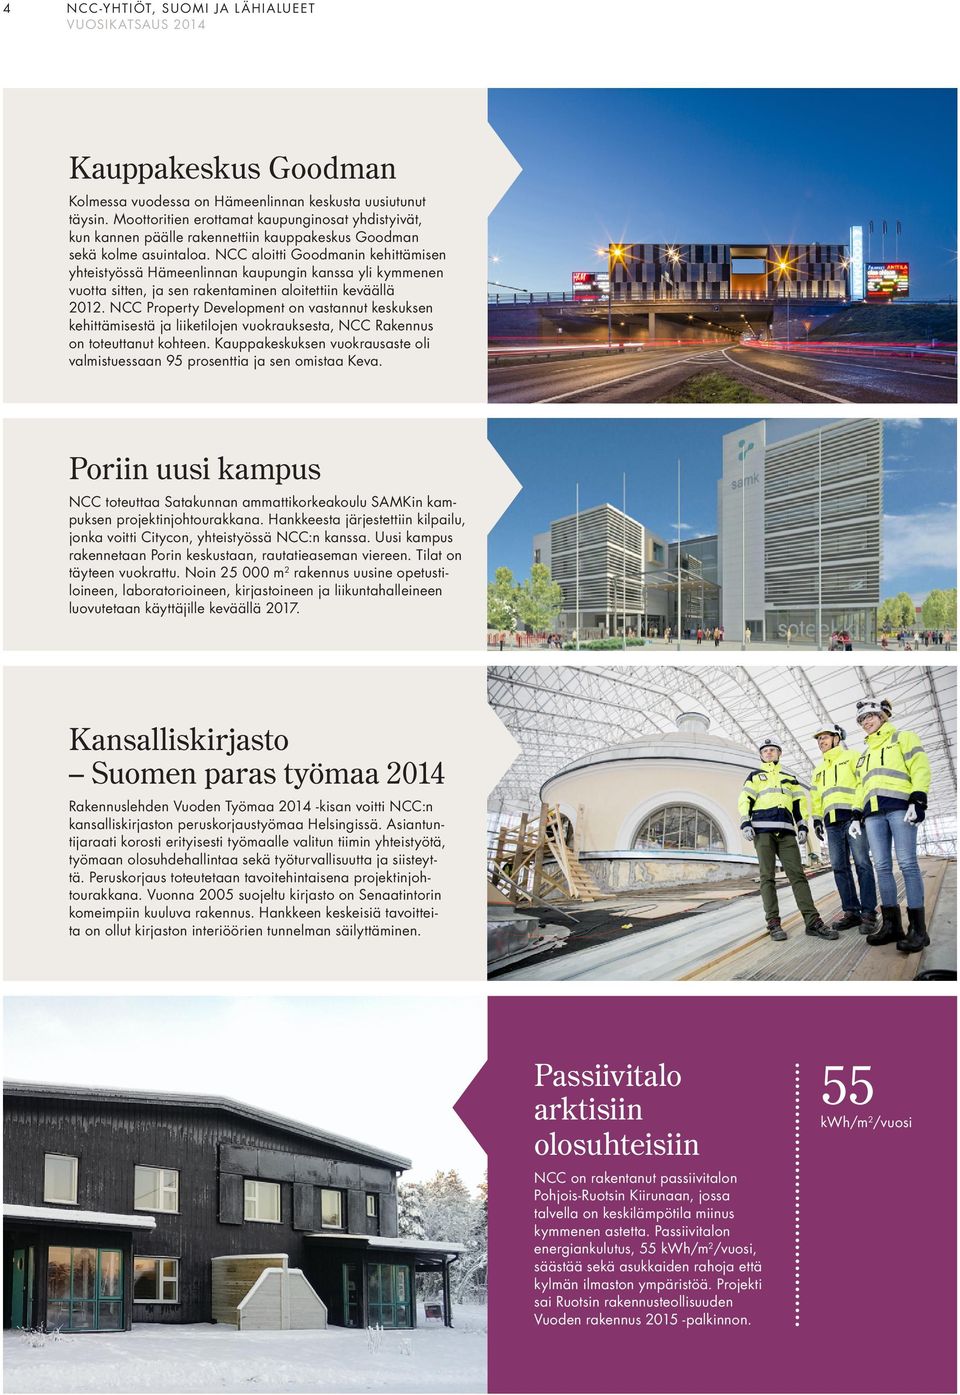 aloitti Goodmanin kehittämisen yhteistyössä Hämeenlinnan kaupungin kanssa yli kymmenen vuotta sitten, ja sen rakentaminen aloitettiin keväällä 2012.